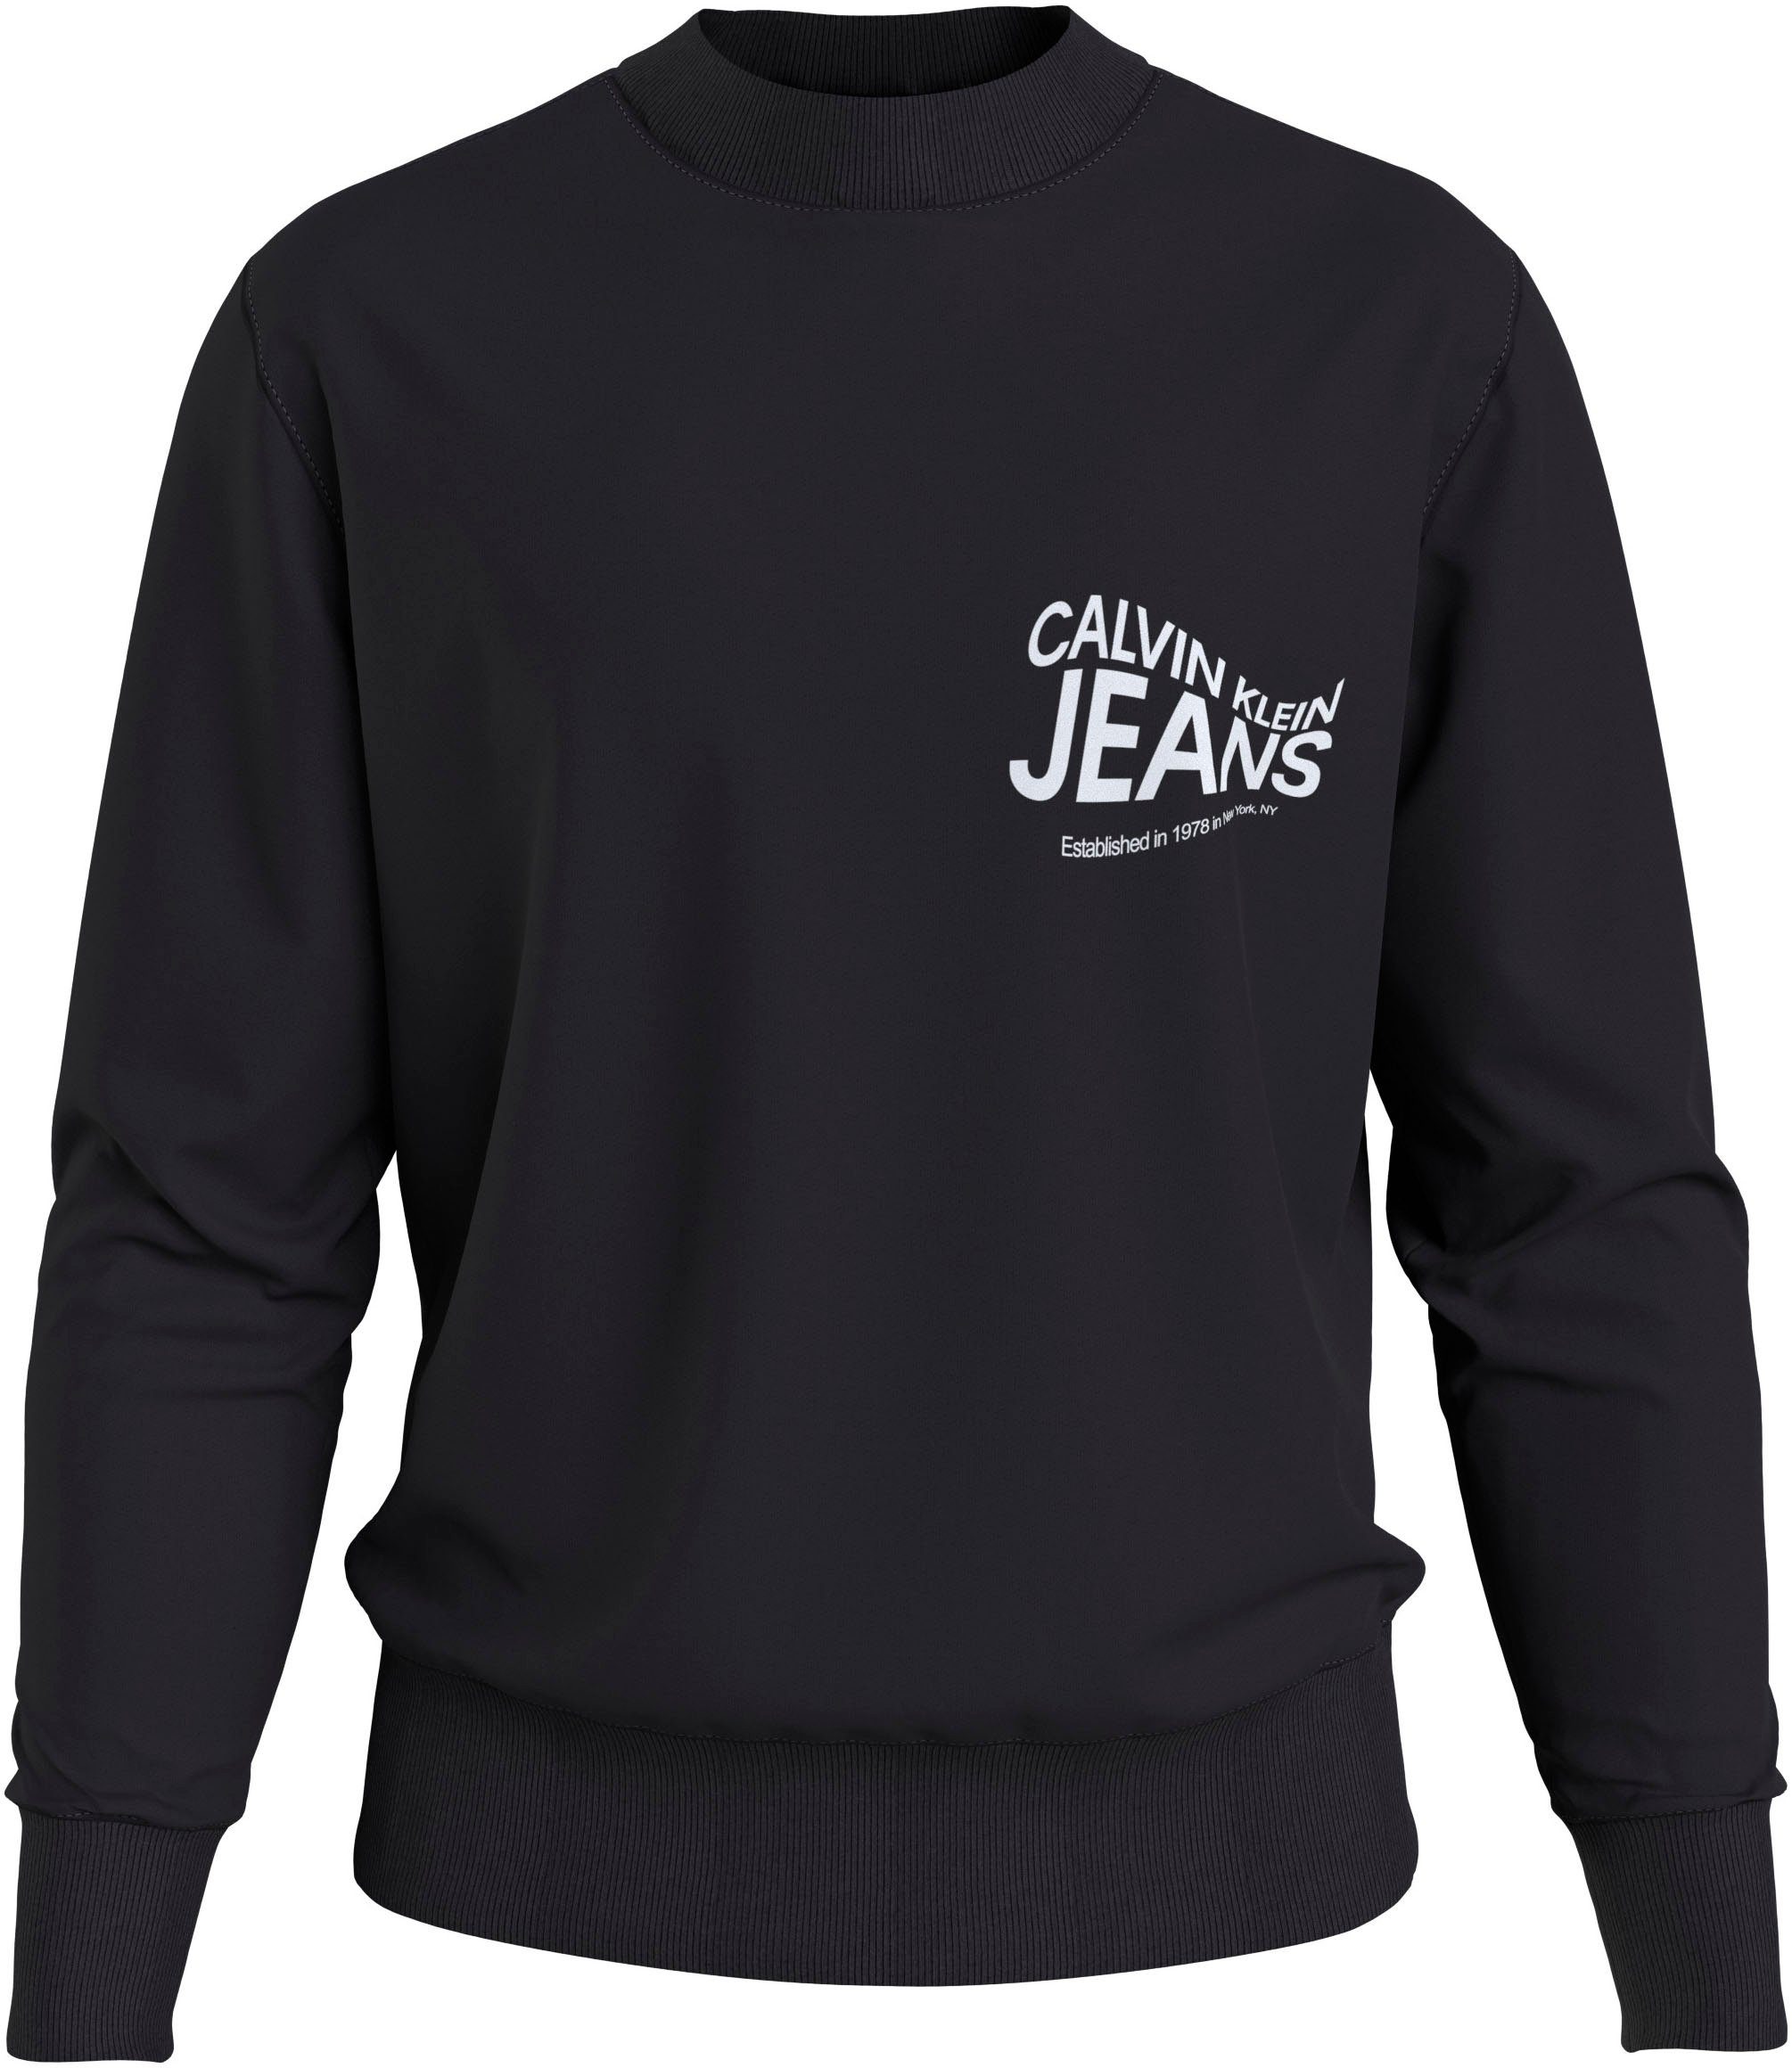 GRAPHIC Sweatshirt MOTION NECK Klein Calvin CREW FUTURE Jeans